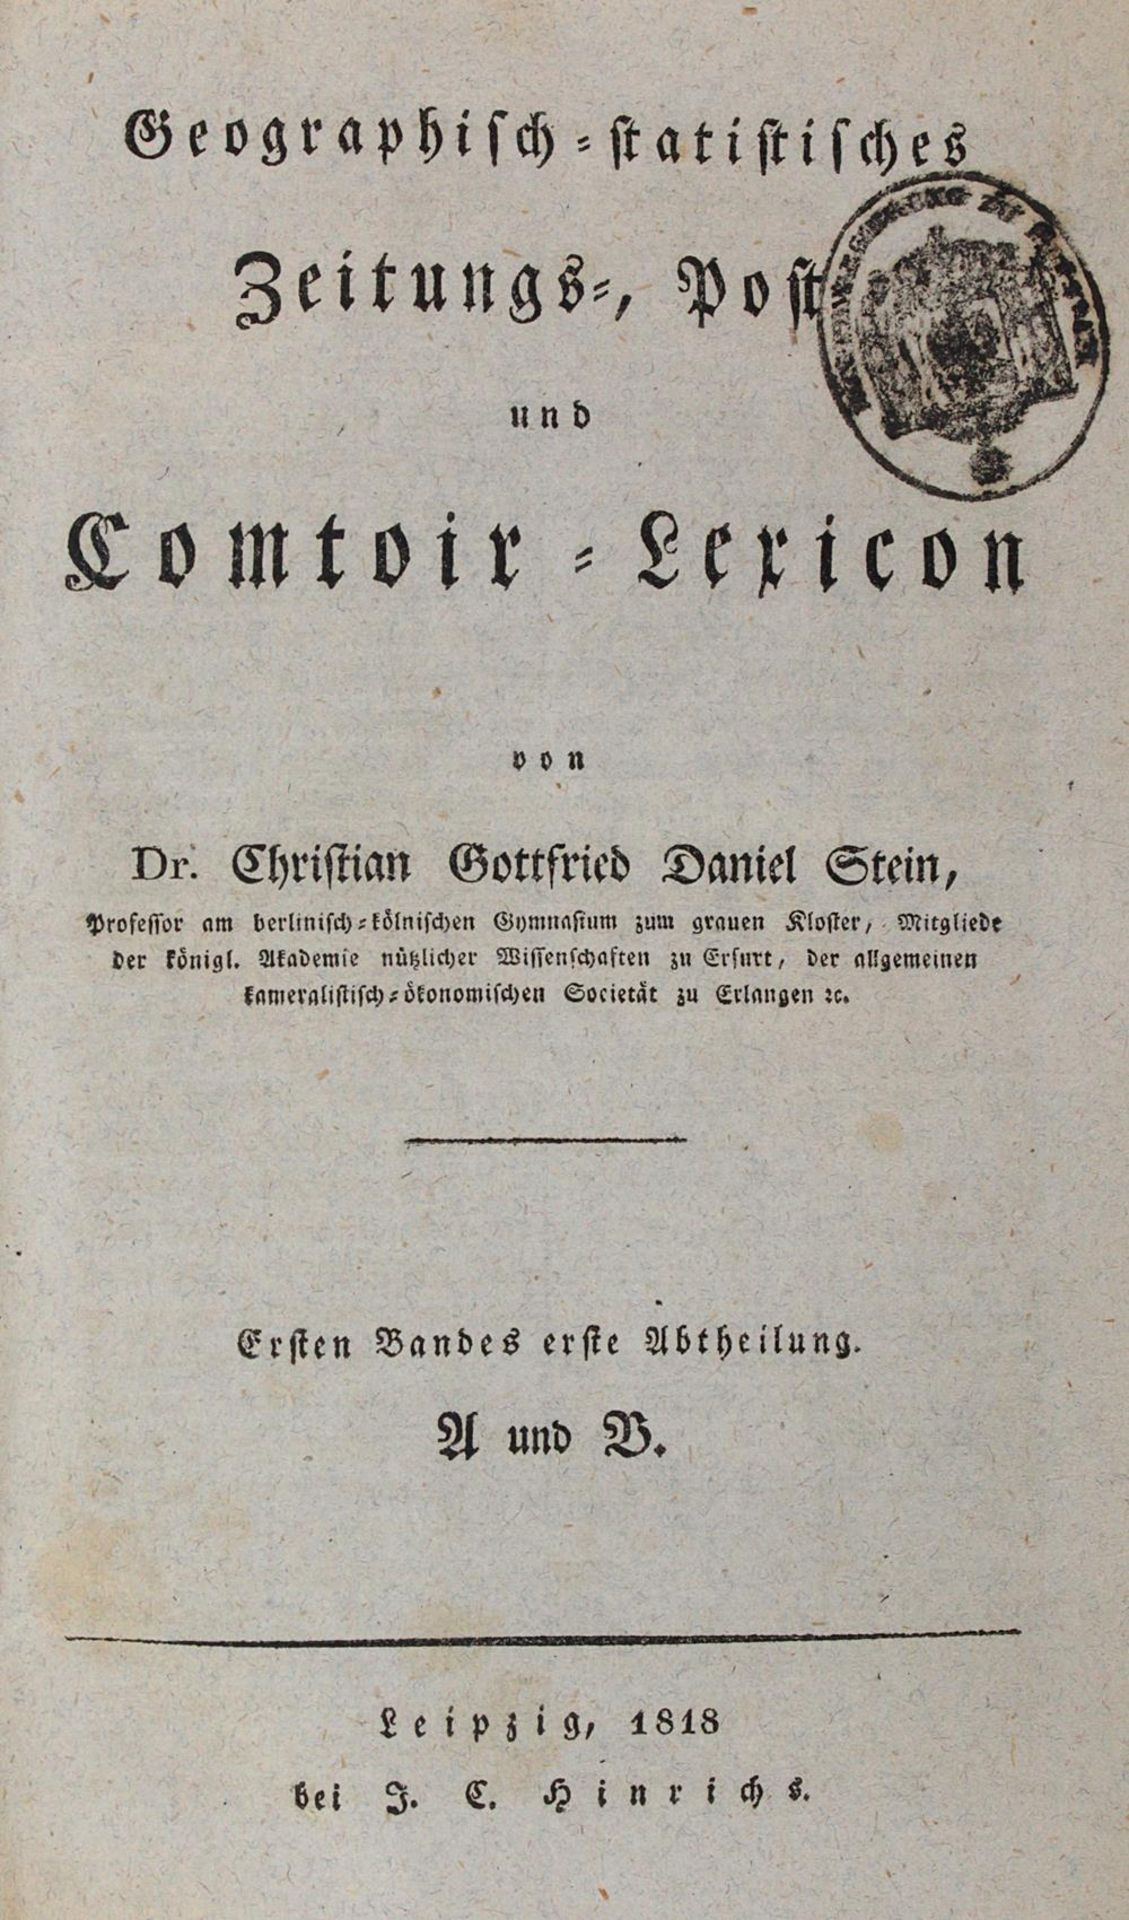 Stein,C.G.D.Stein,C.G.D. Geographisch-statistisches Zeitungs-, Post- und Comtoir-LexicoStei